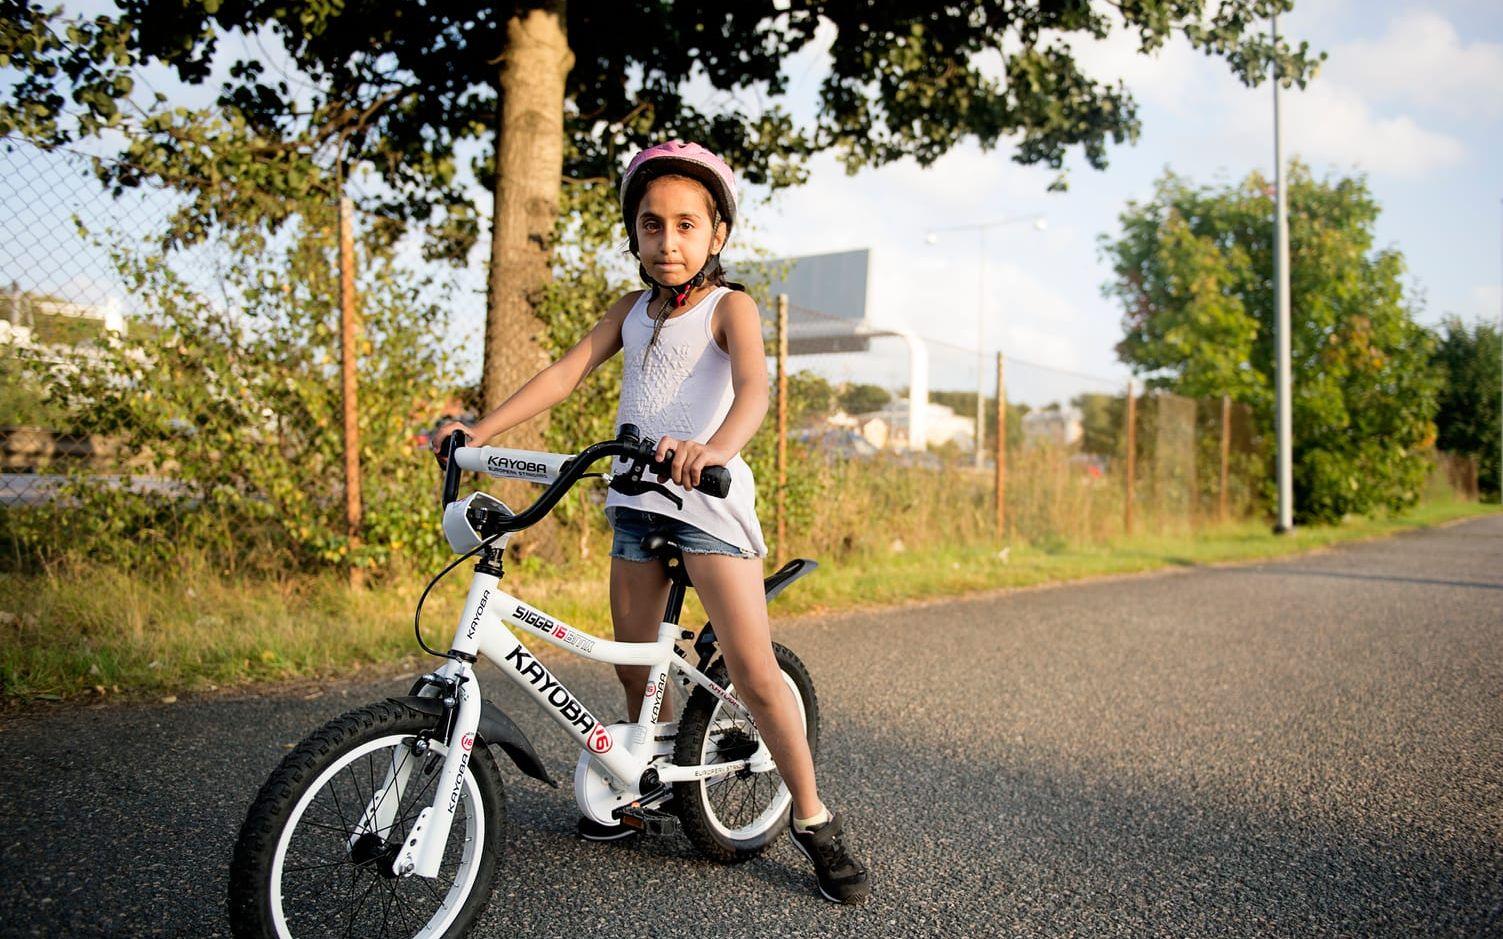 Bahar Ahmadyar, 8 har kunnat cykla i över ett år. "Jag kan cykla med bara en hand, men det känns säkrast med två", säger hon.